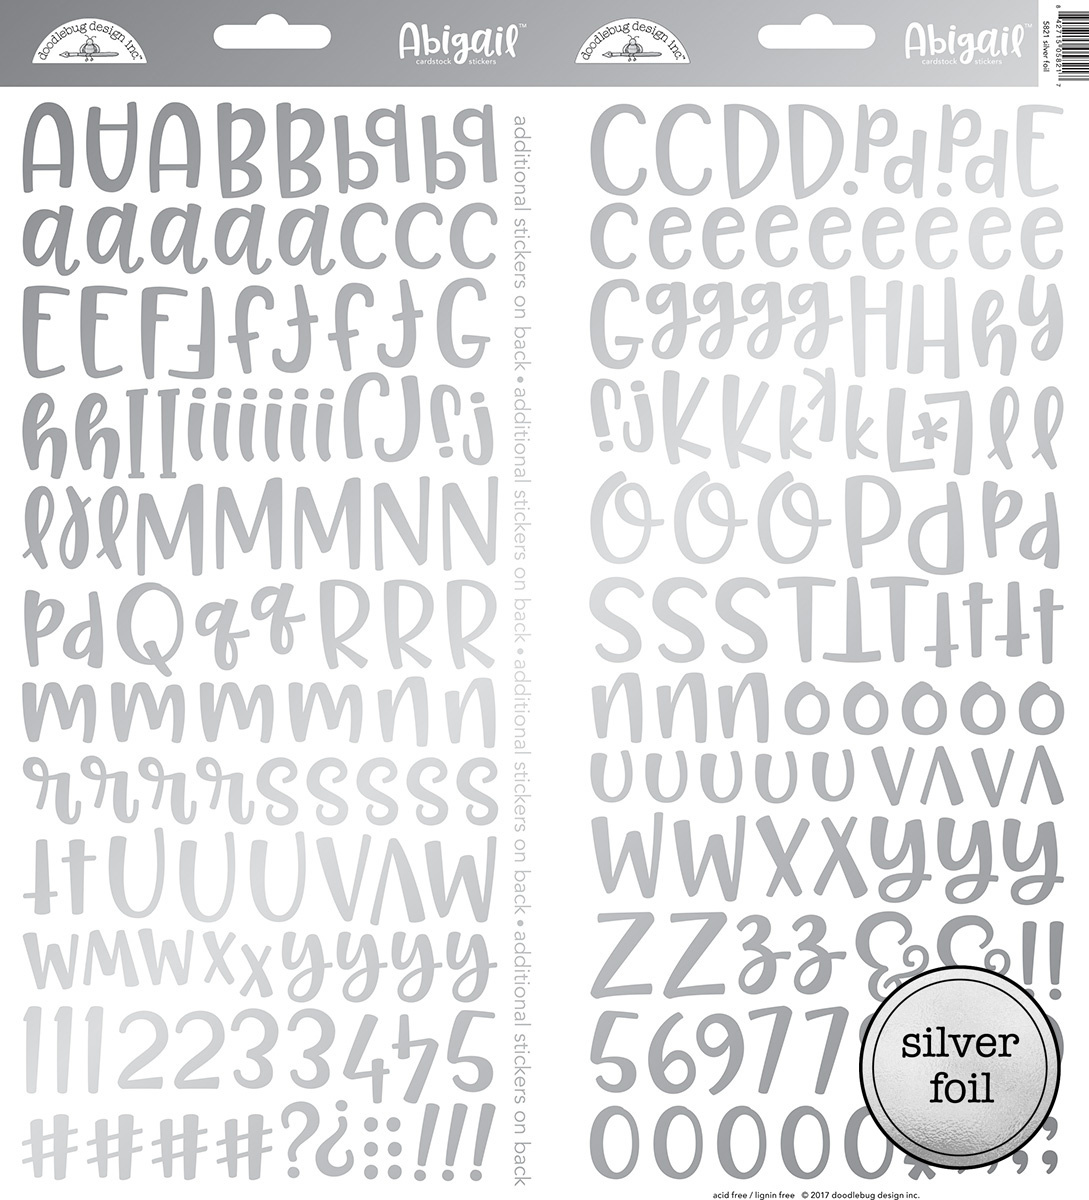 doodlebug-design-silver-foil-abigail-stickers-5821